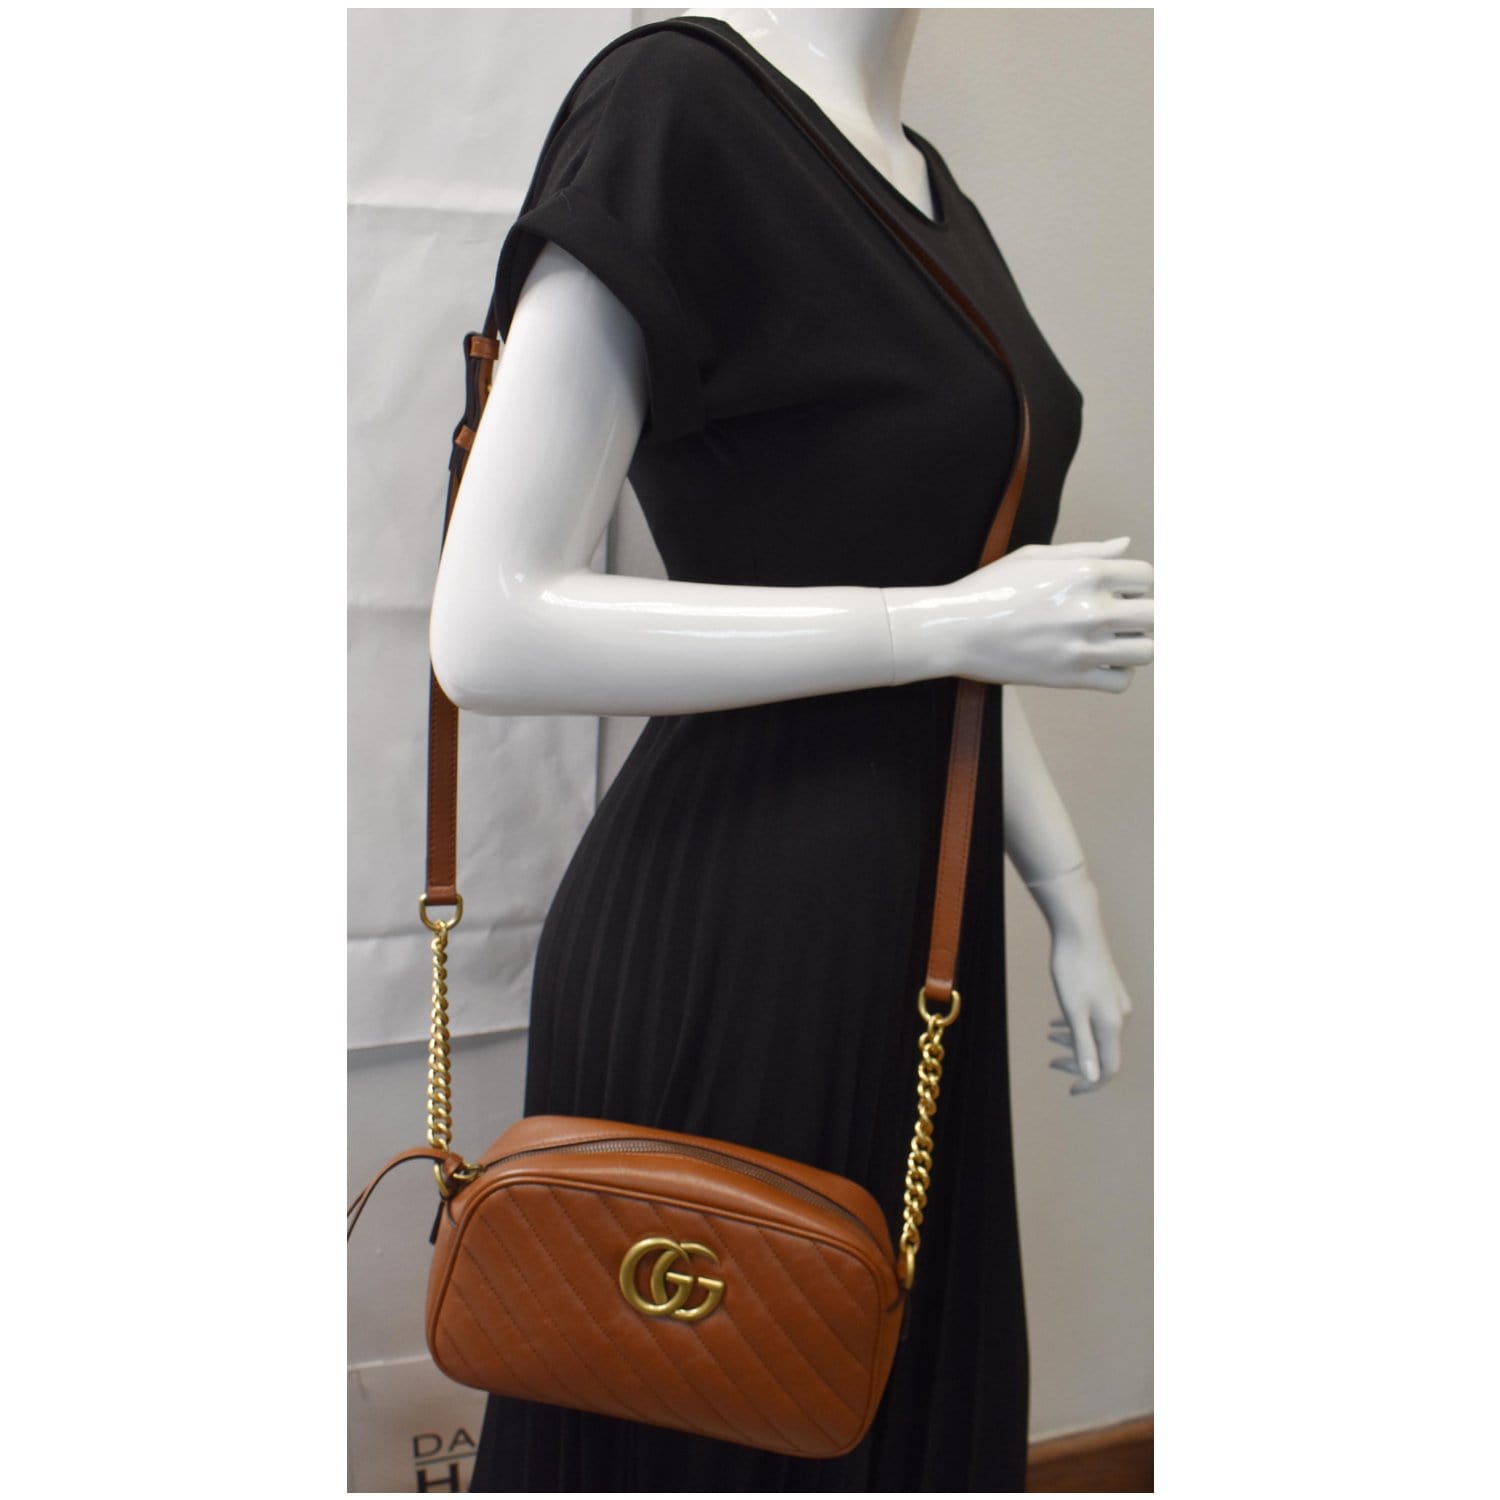 Gucci Marmont camera bag  Gucci handbags, Gucci marmont camera bag, Gucci  bag outfit